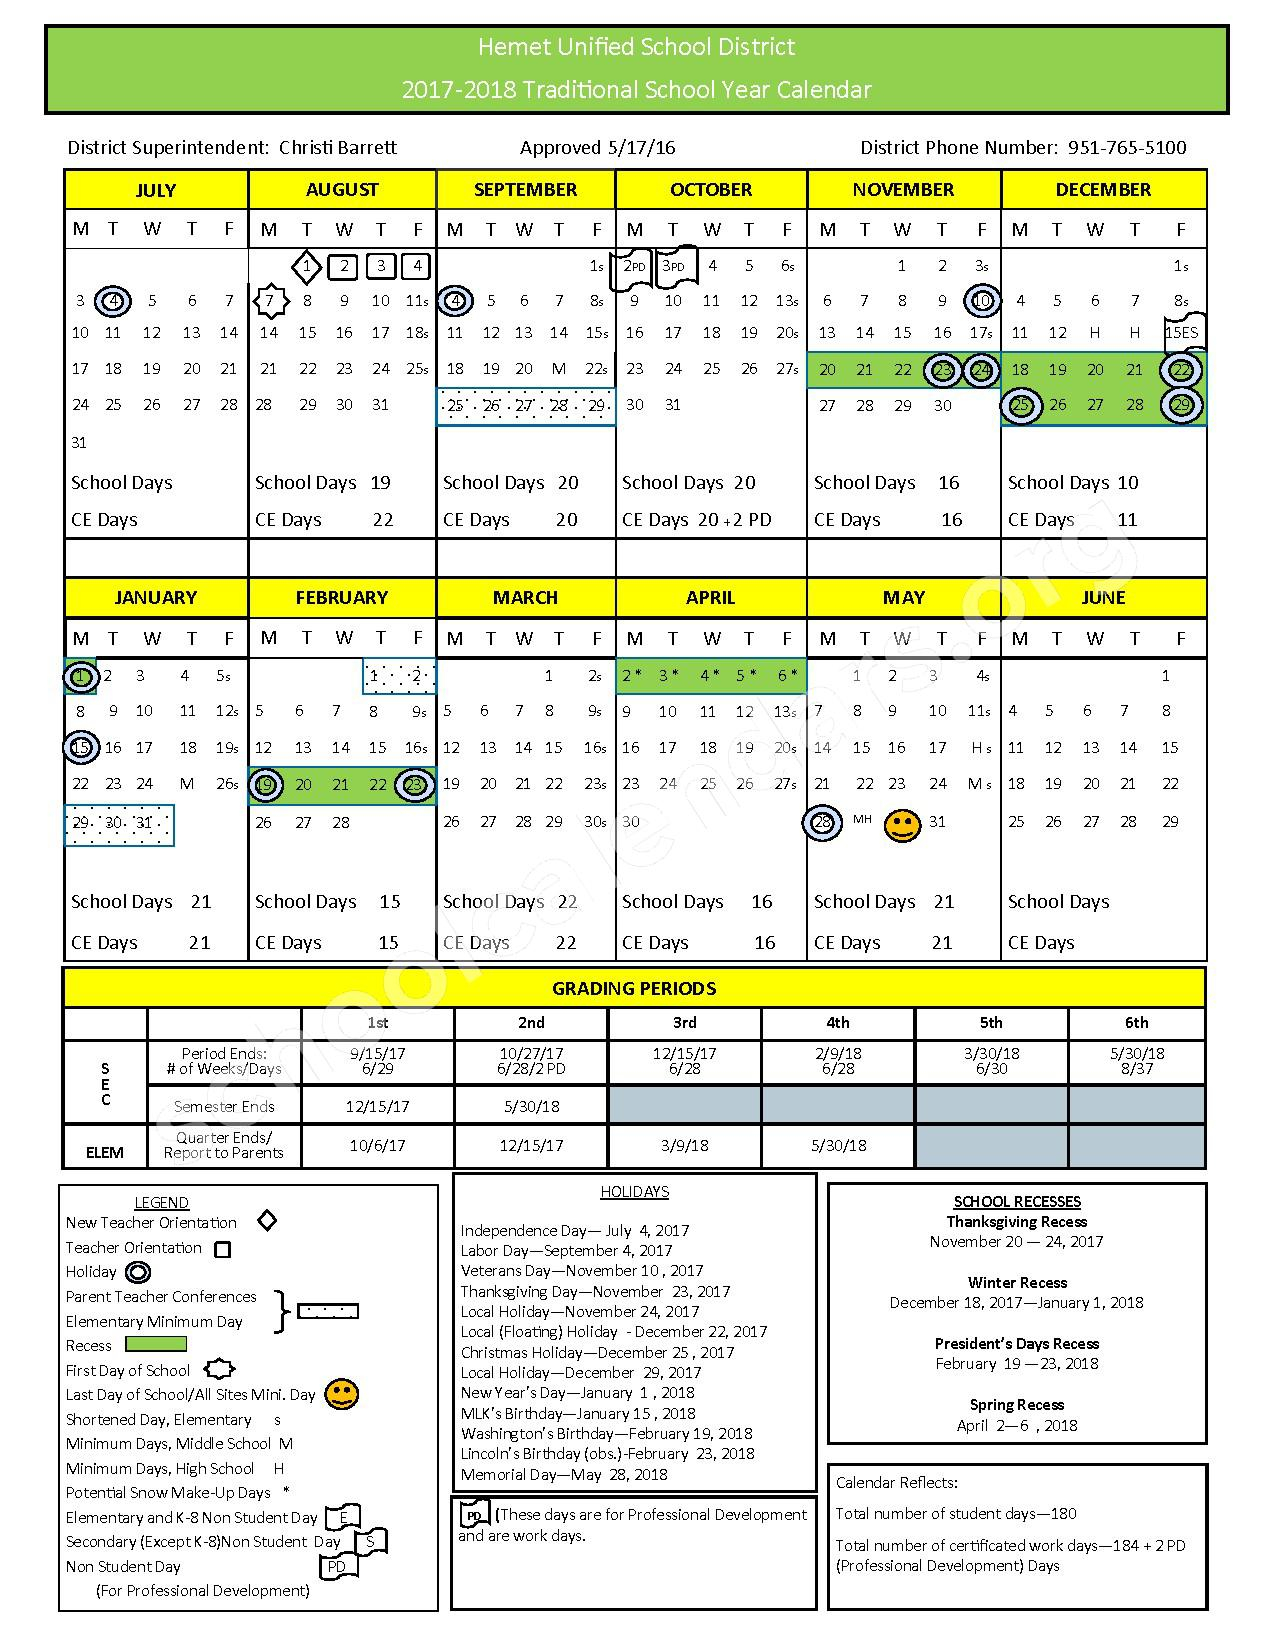 hemet-unified-school-district-school-calendar-2022-schoolcalendars